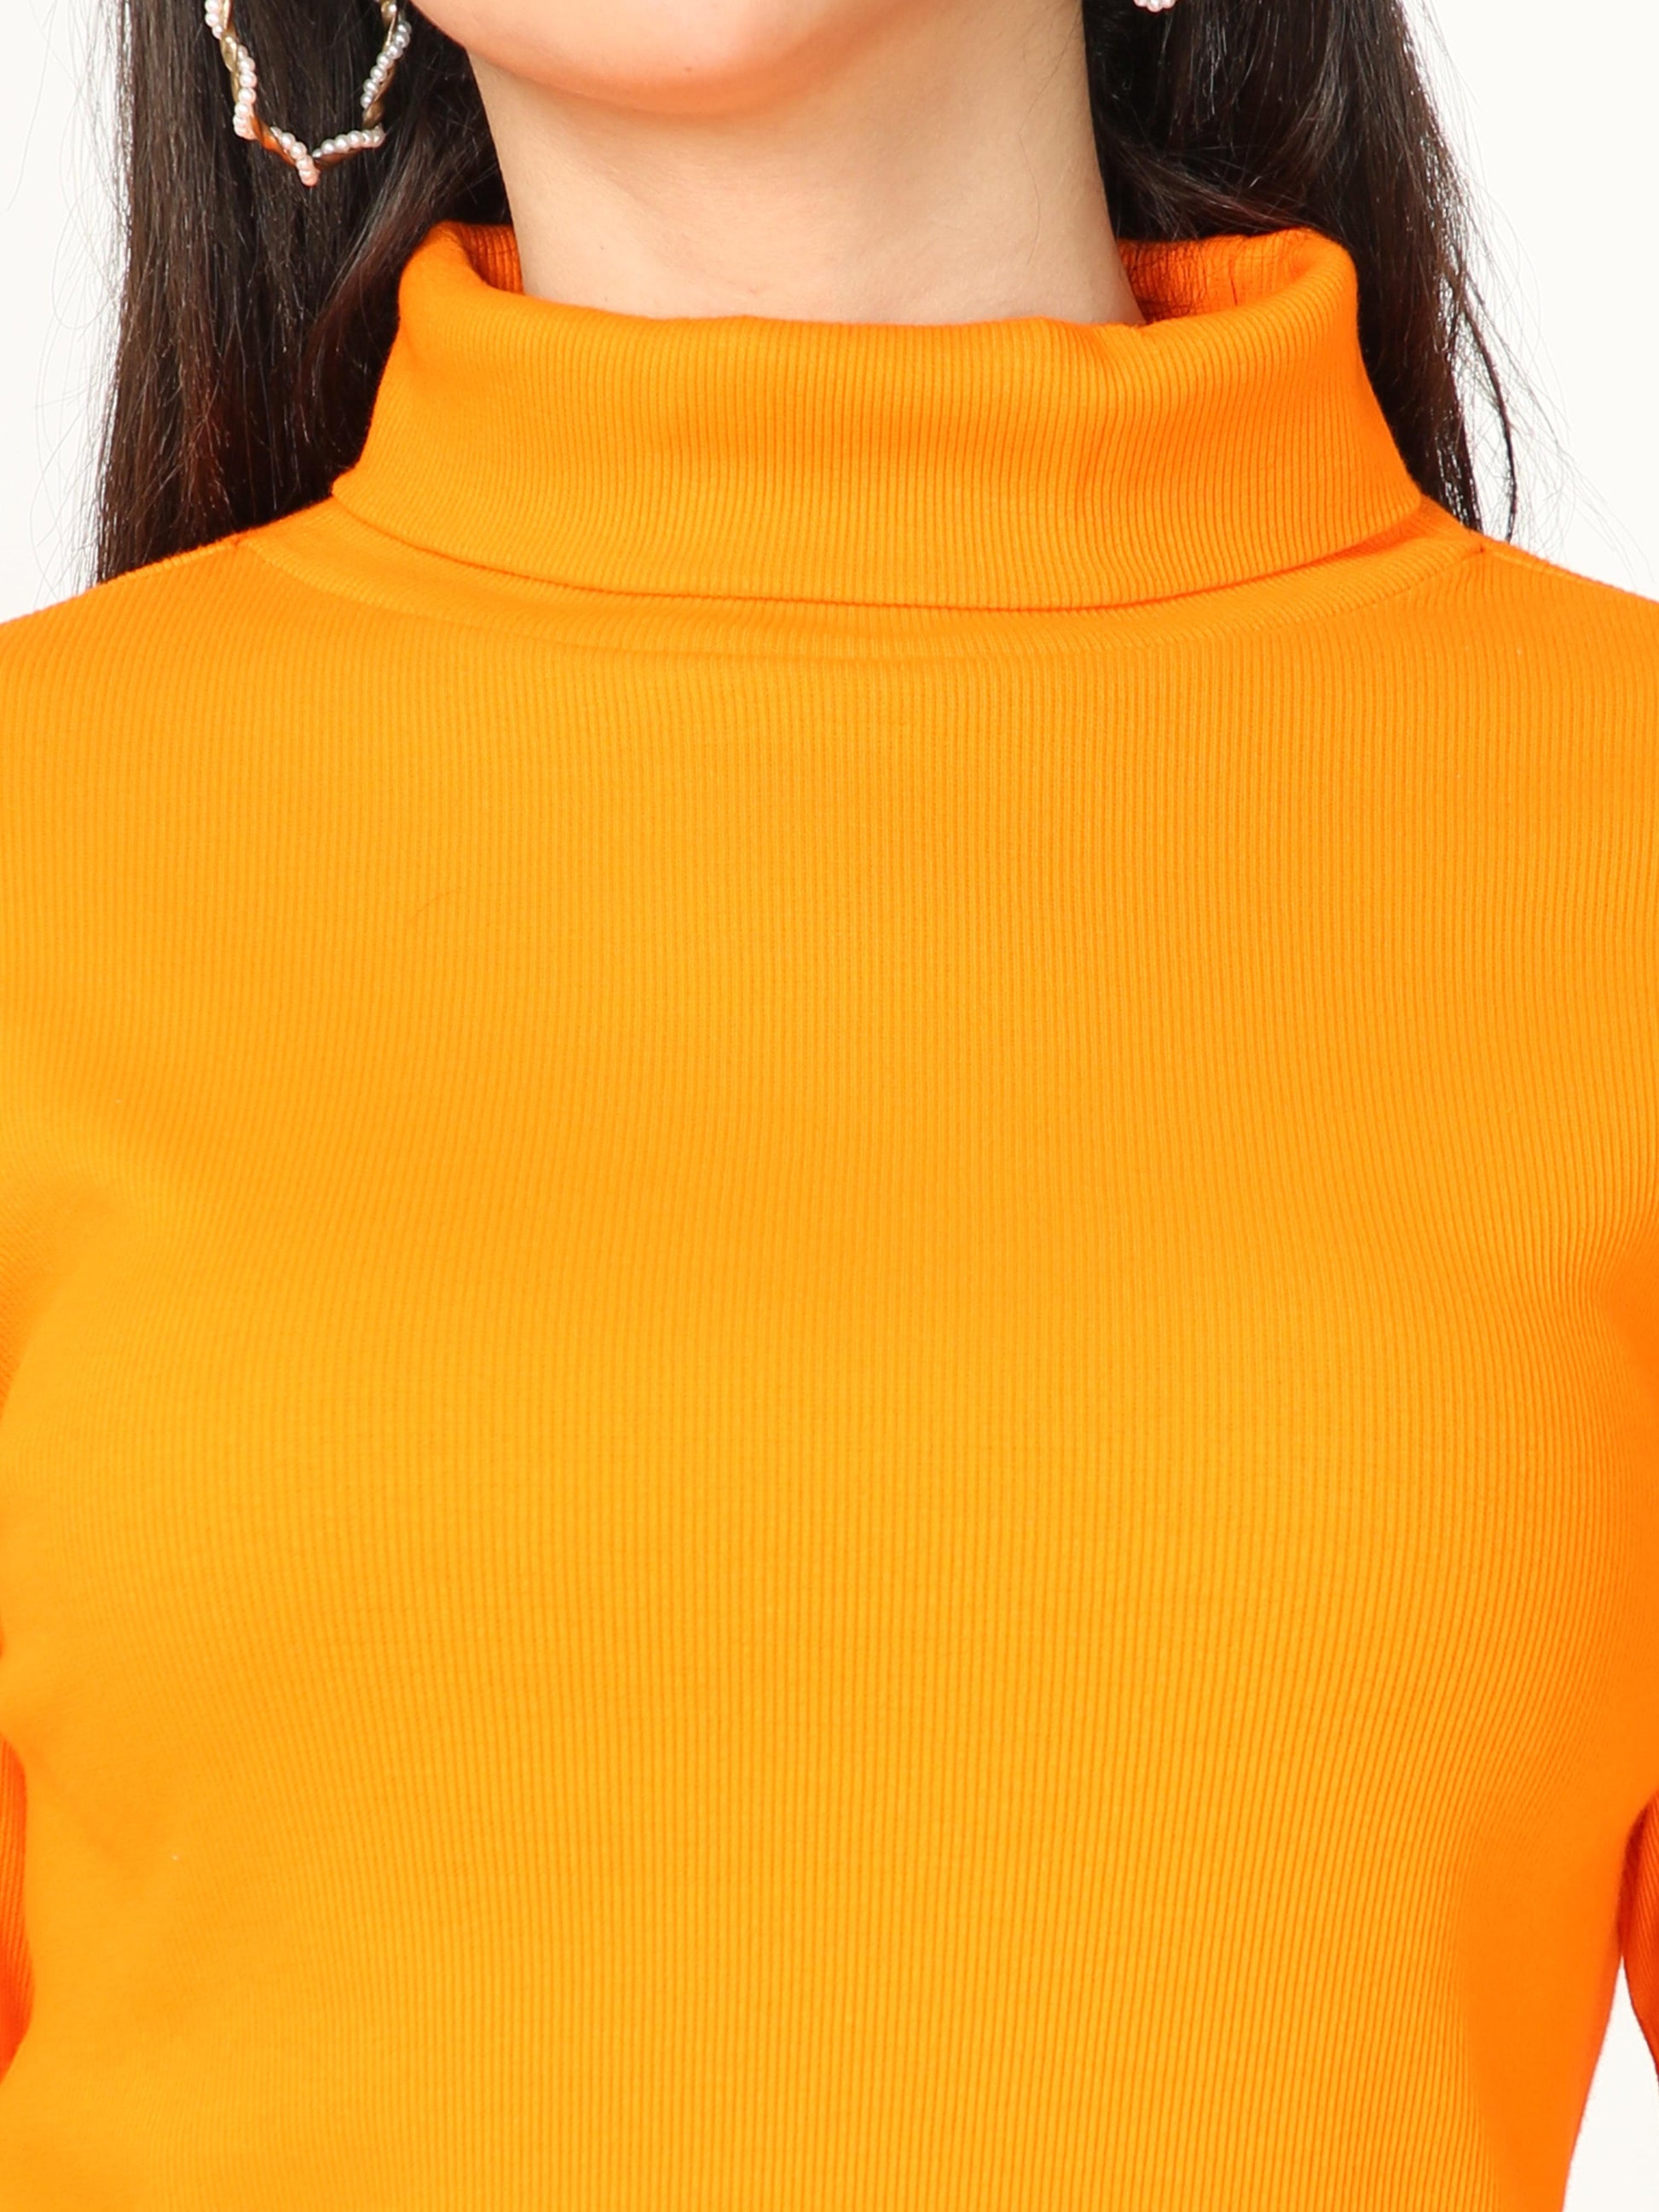 High Neck Full Sleeve Women's T-Shirt - Orange